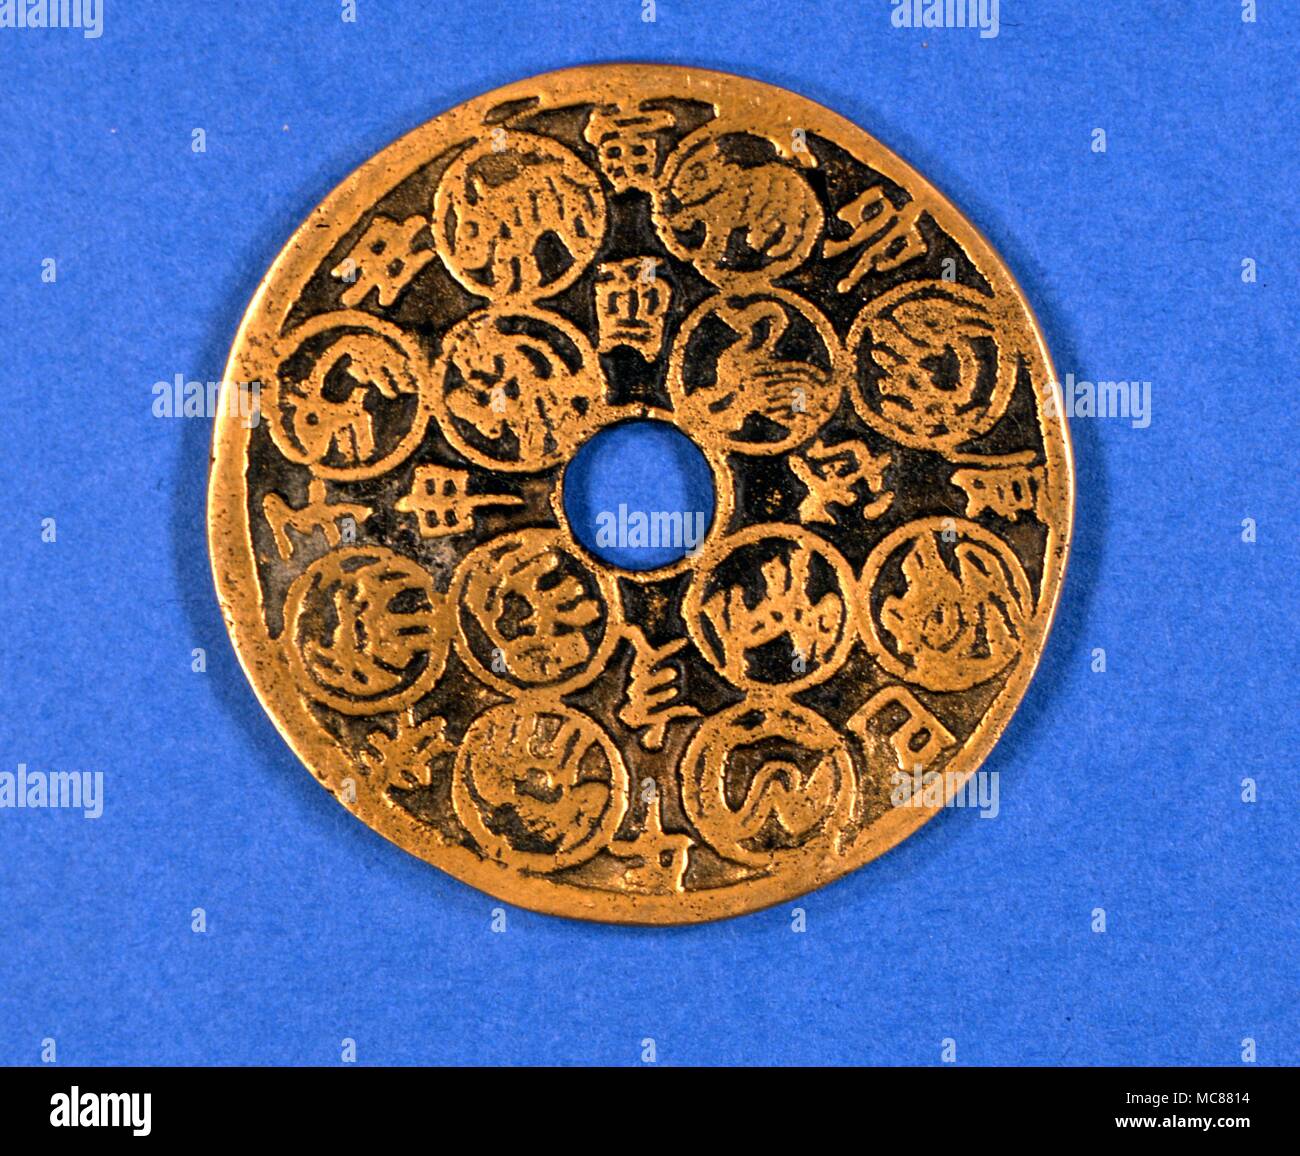 Fin du xixe siècle avec la médaille d'images en relief les 12 signes du zodiaque du zodiaque chinois. Acheté à Beijing Banque D'Images